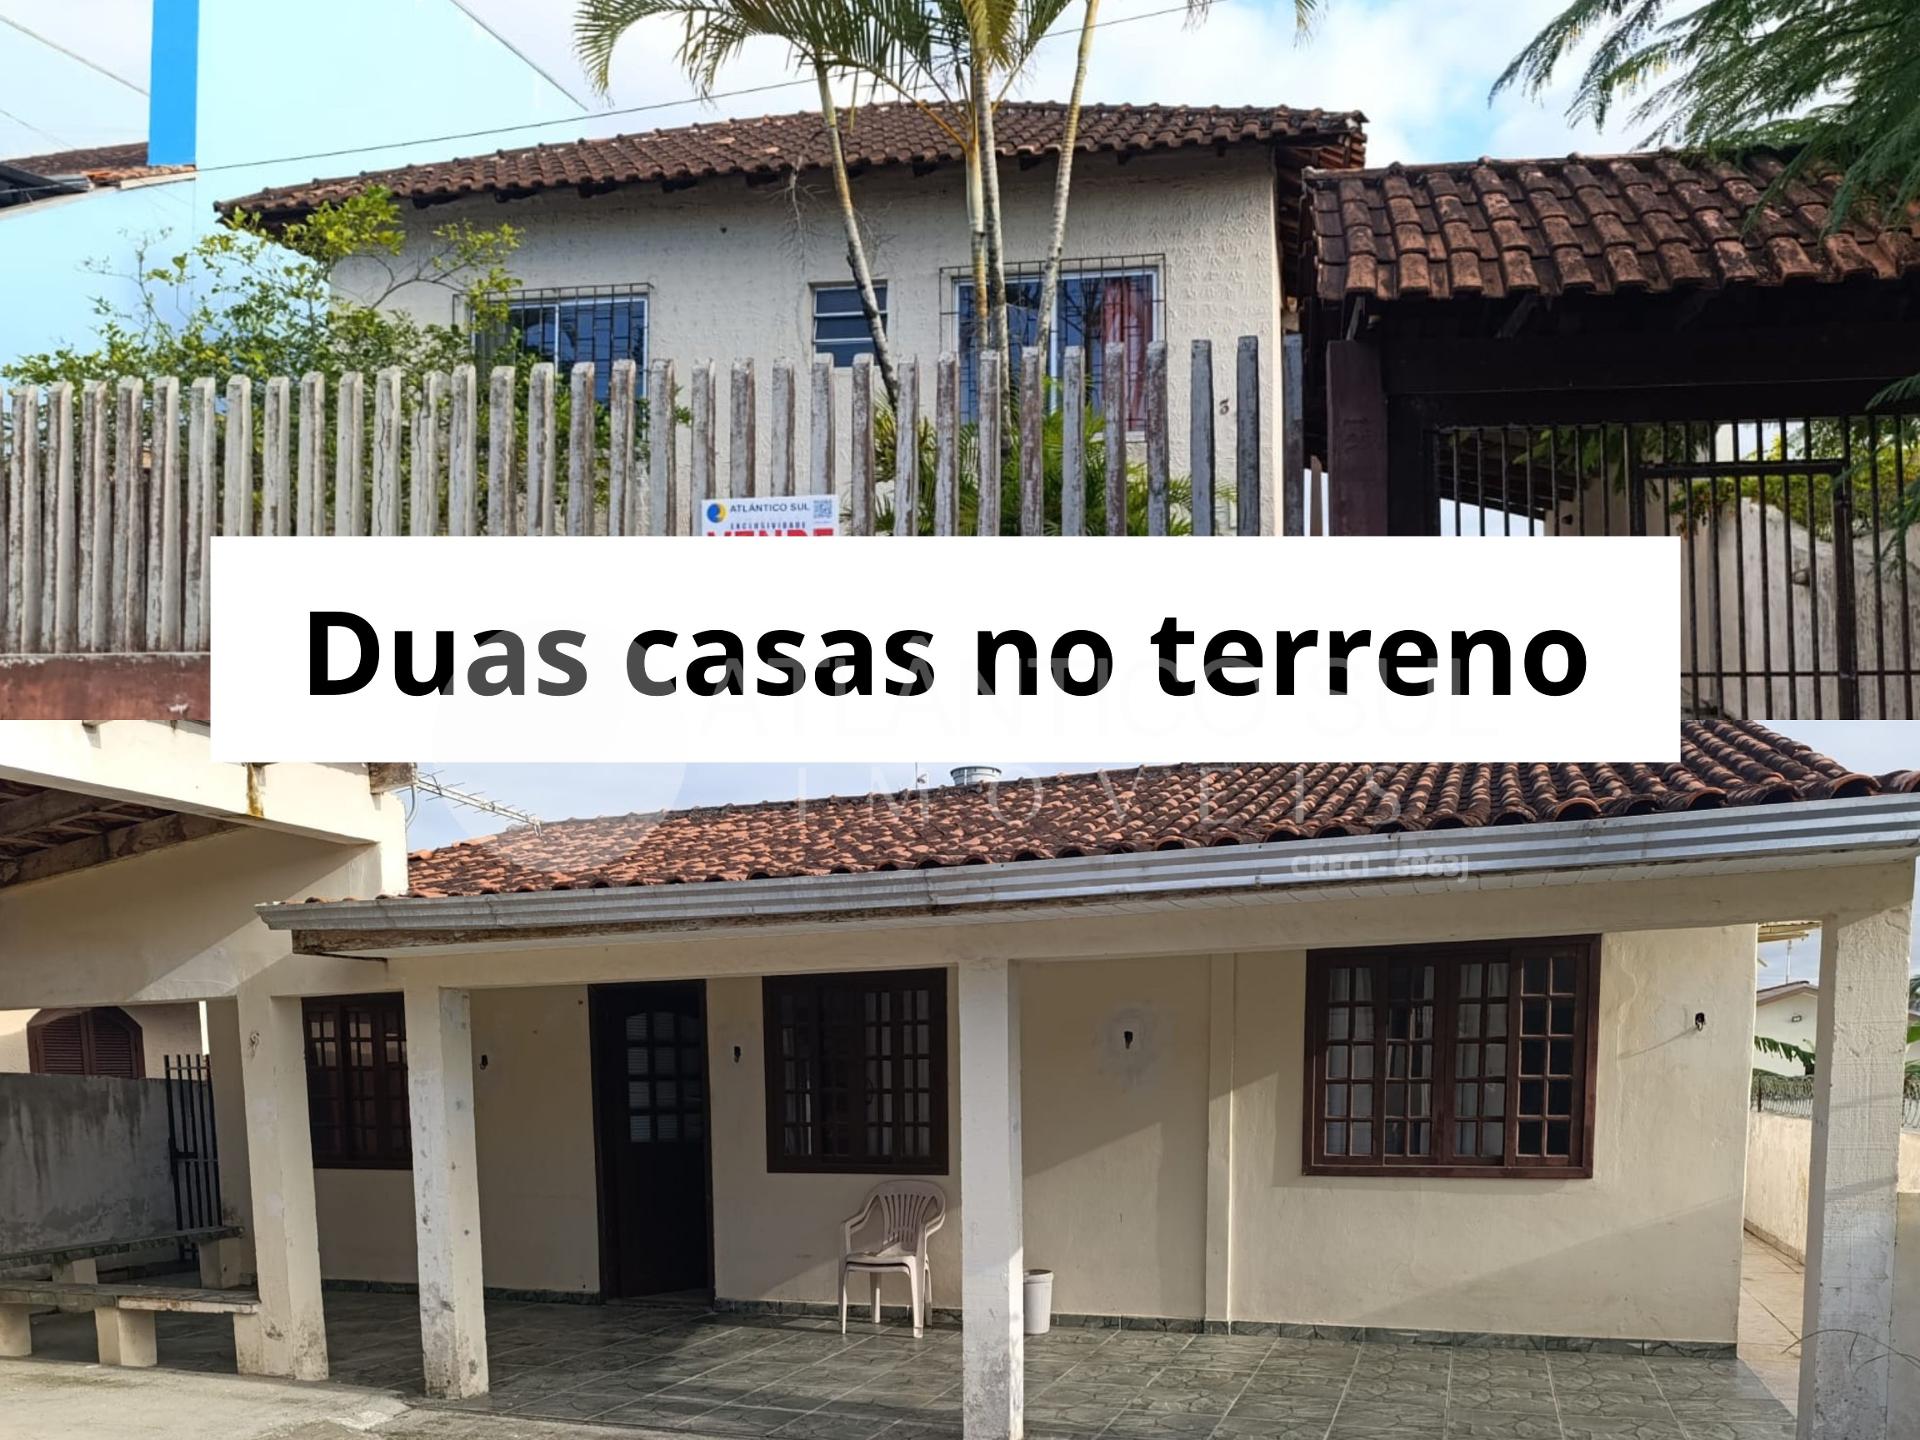 Duas casas no terreno à venda, Praia de Leste, PONTAL DO PARAN...